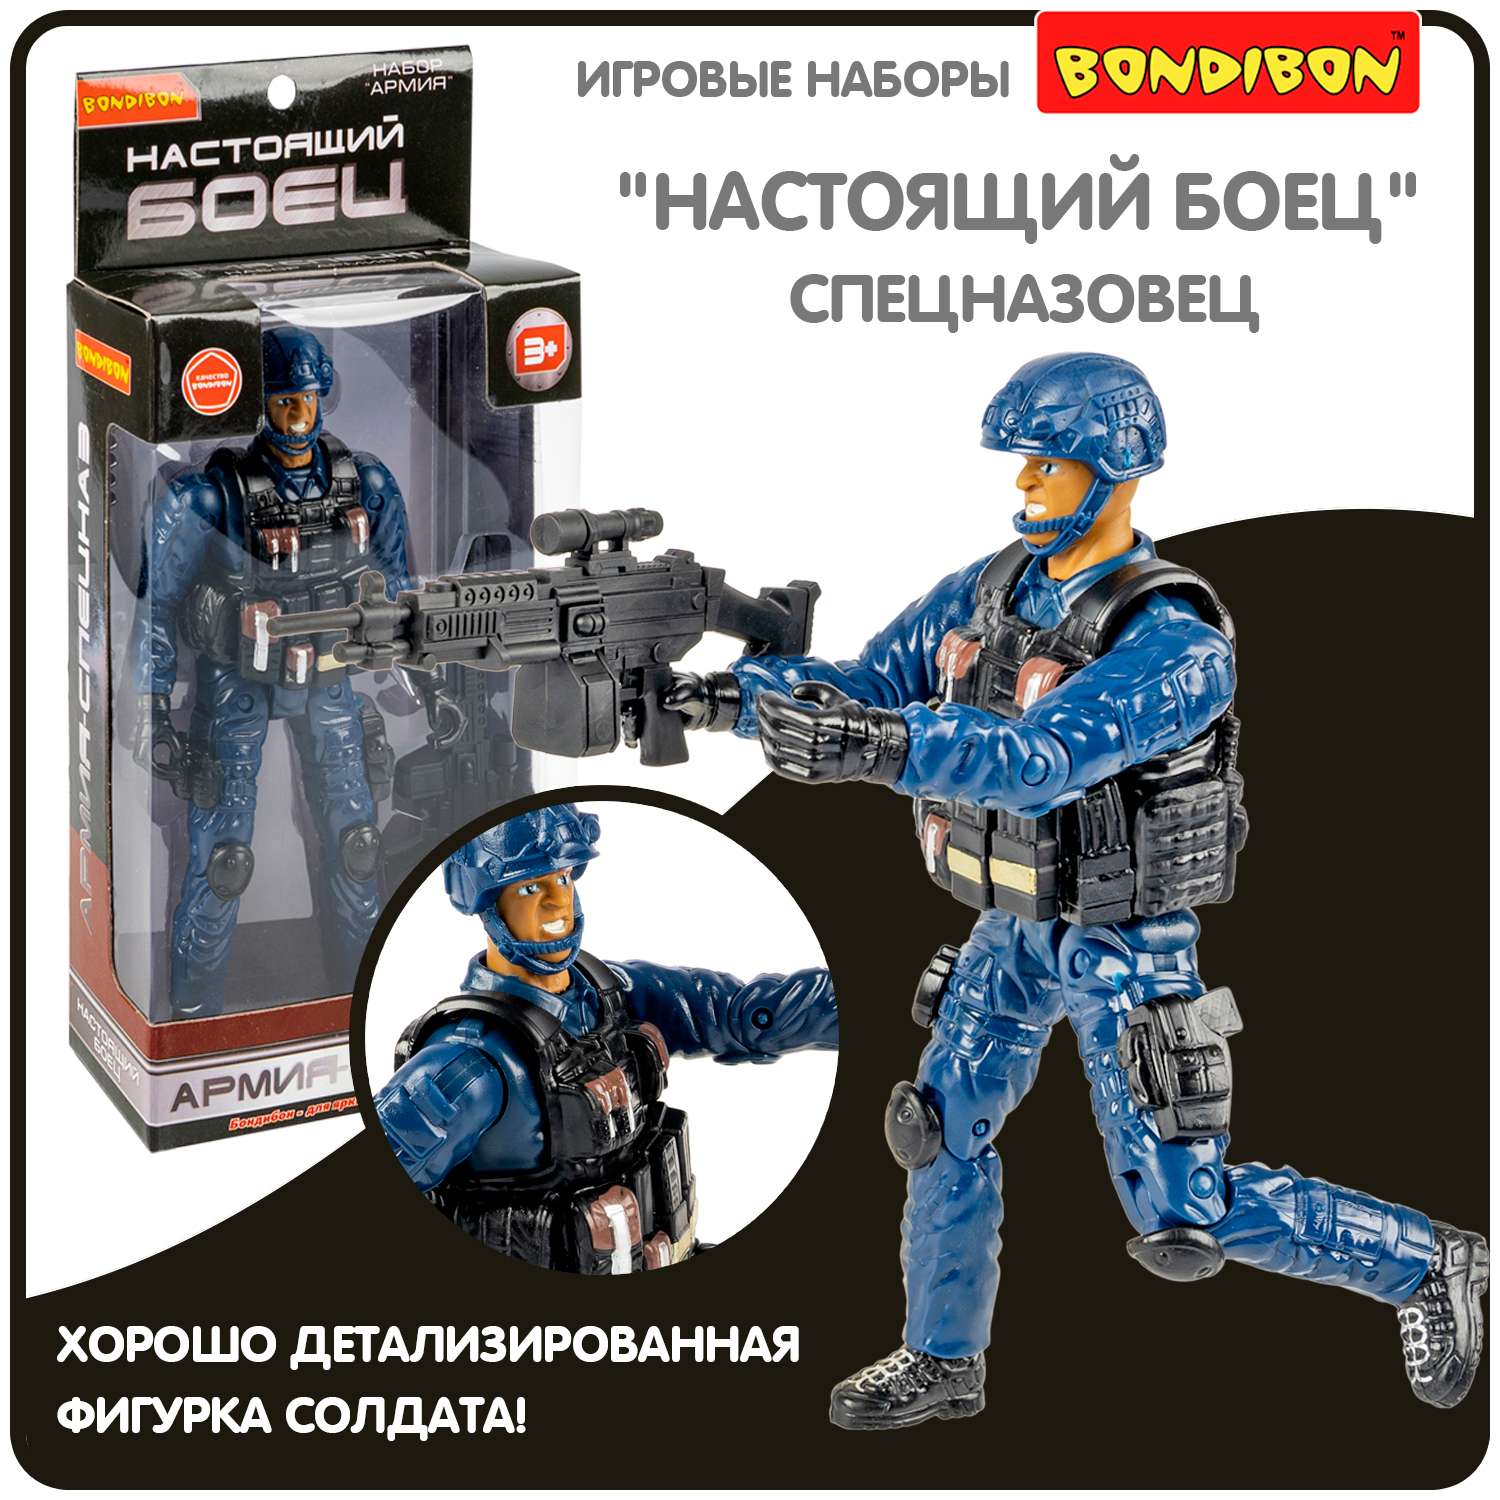 Игровой набор BONDIBON Фигурка солдата 18 см с оружием в синей форме и шлеме - фото 1